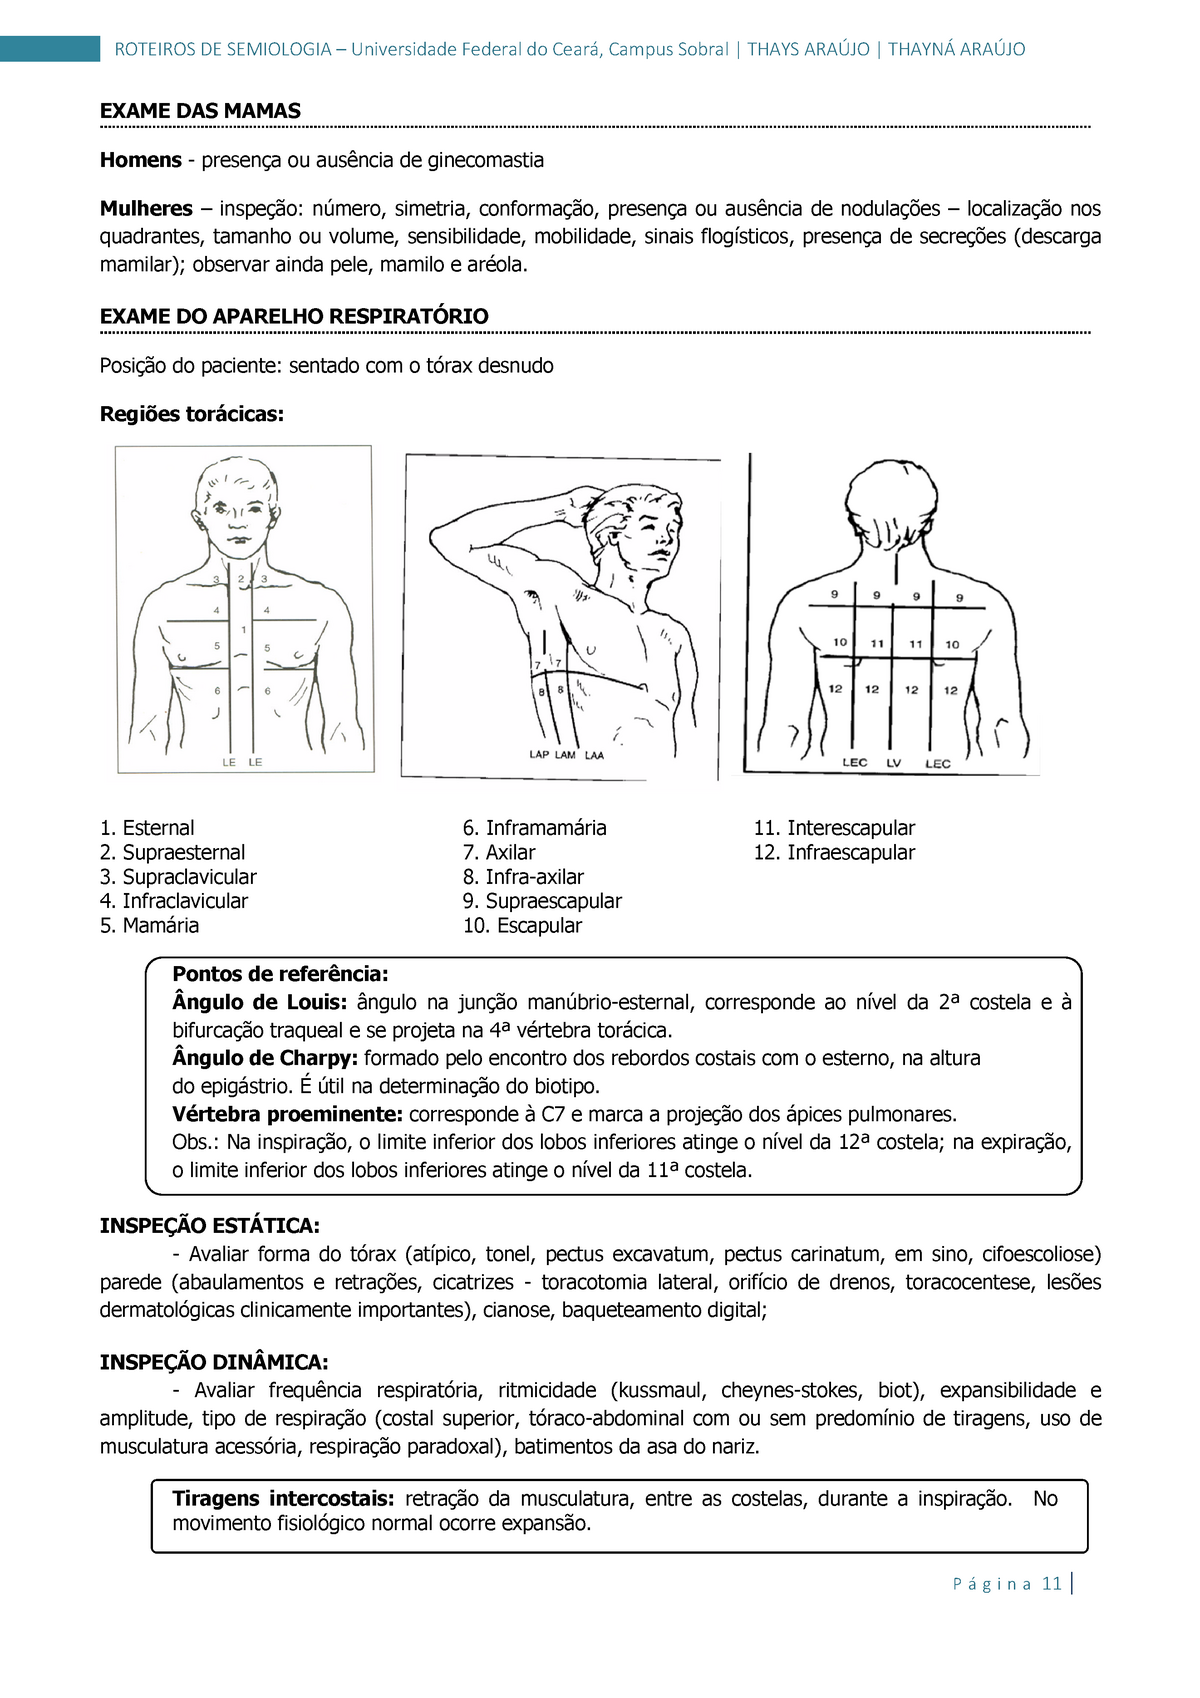 Semiologia 02 roteiro prático de anamnese e exame físico